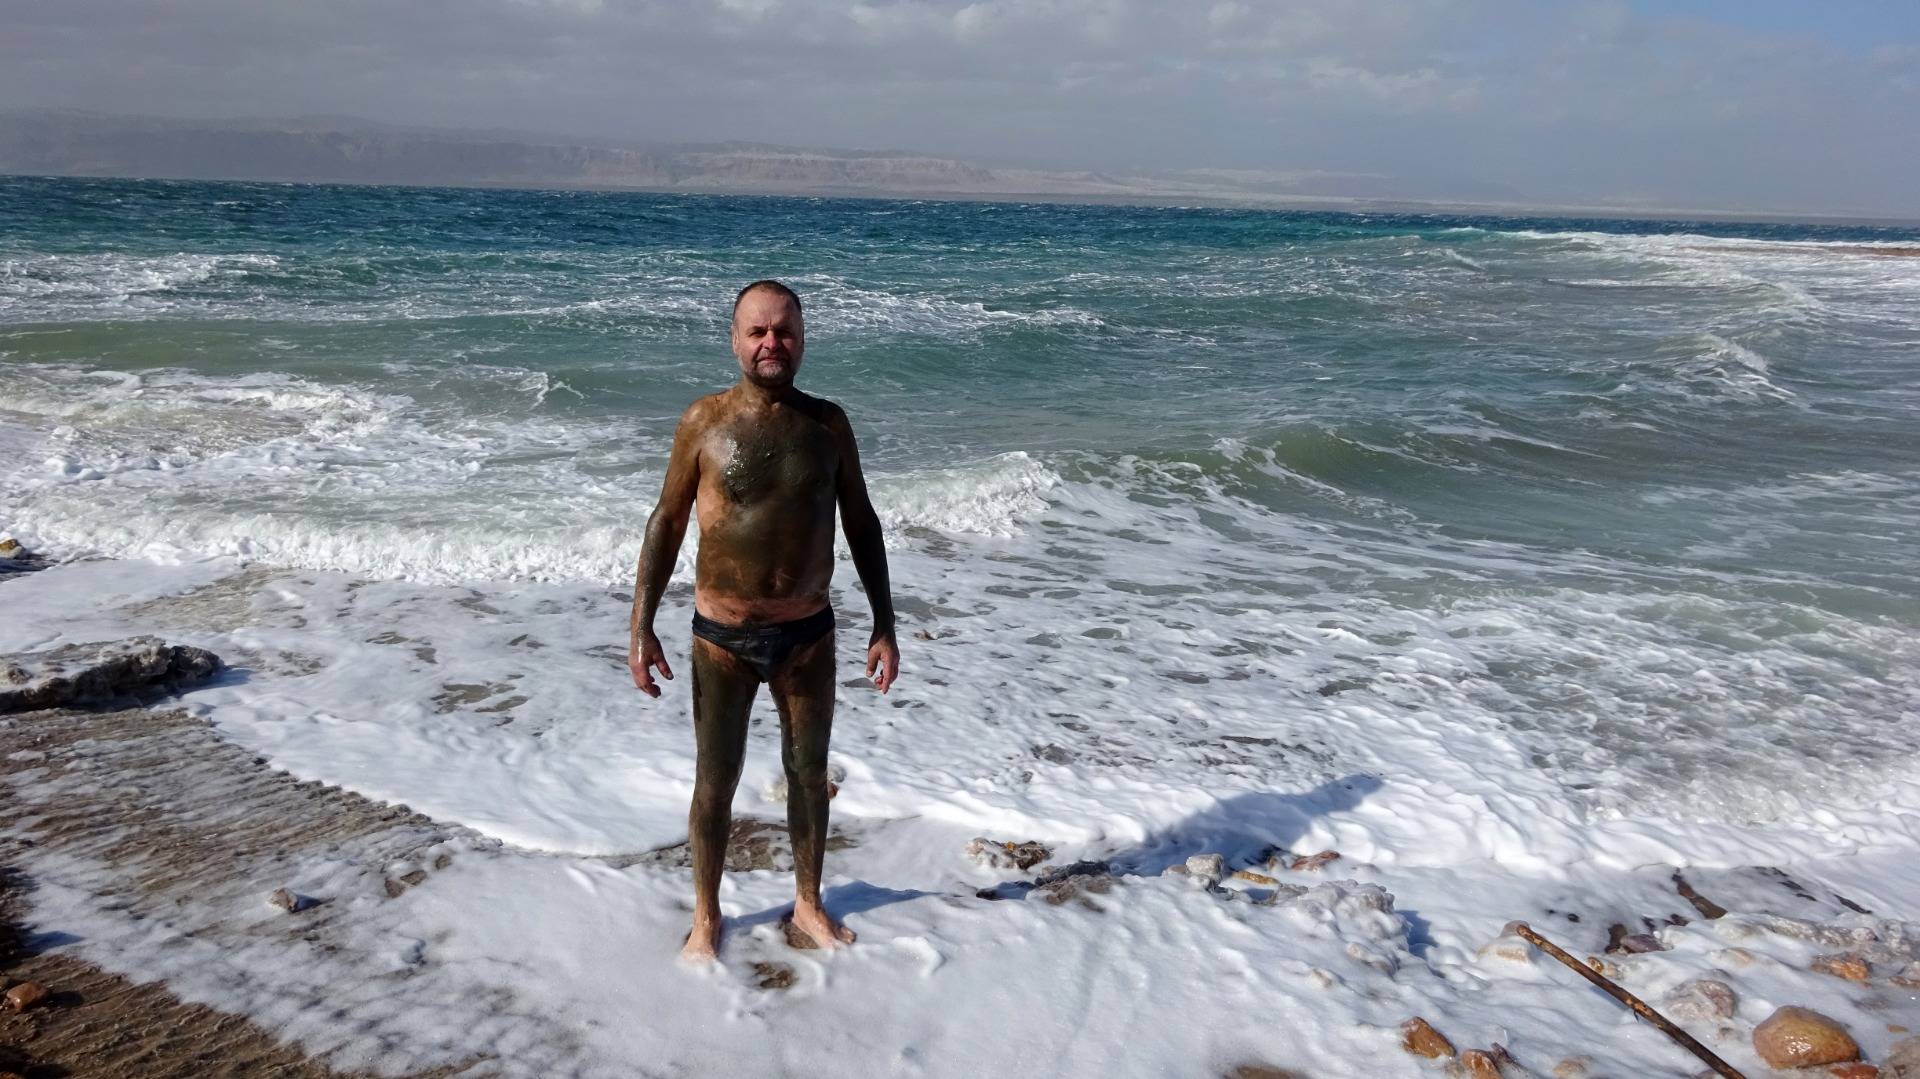 The Dead Sea mud has healing properties!